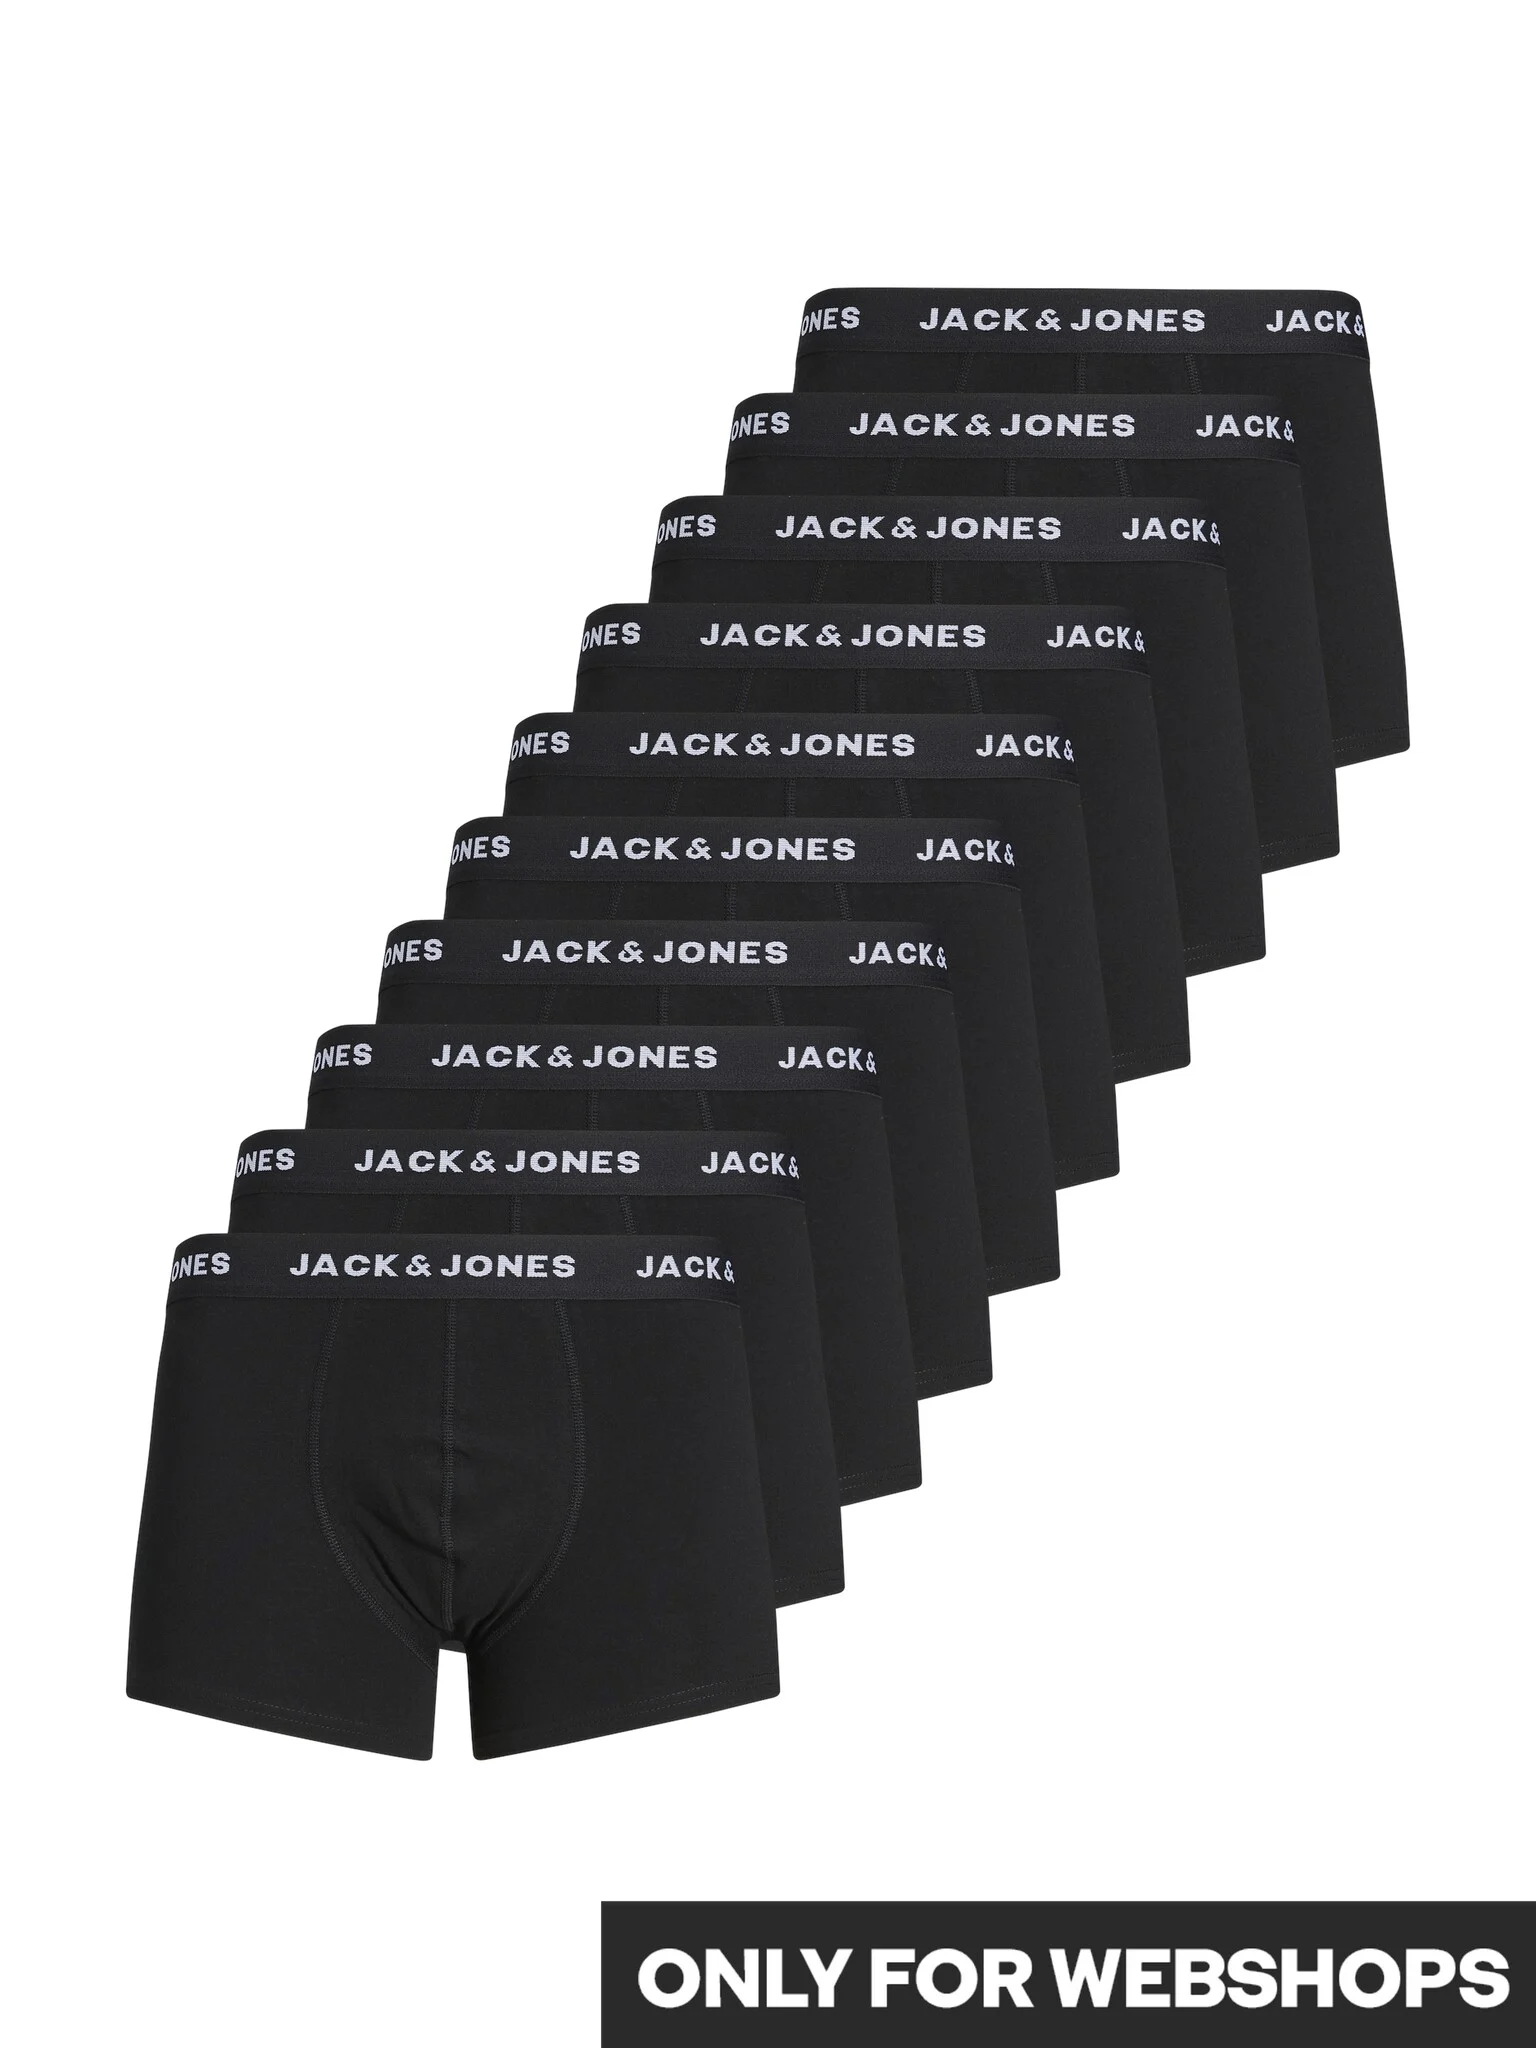 Afbeelding van Jack & Jones Effen boxershorts heren multipack jacsolid 10-pack